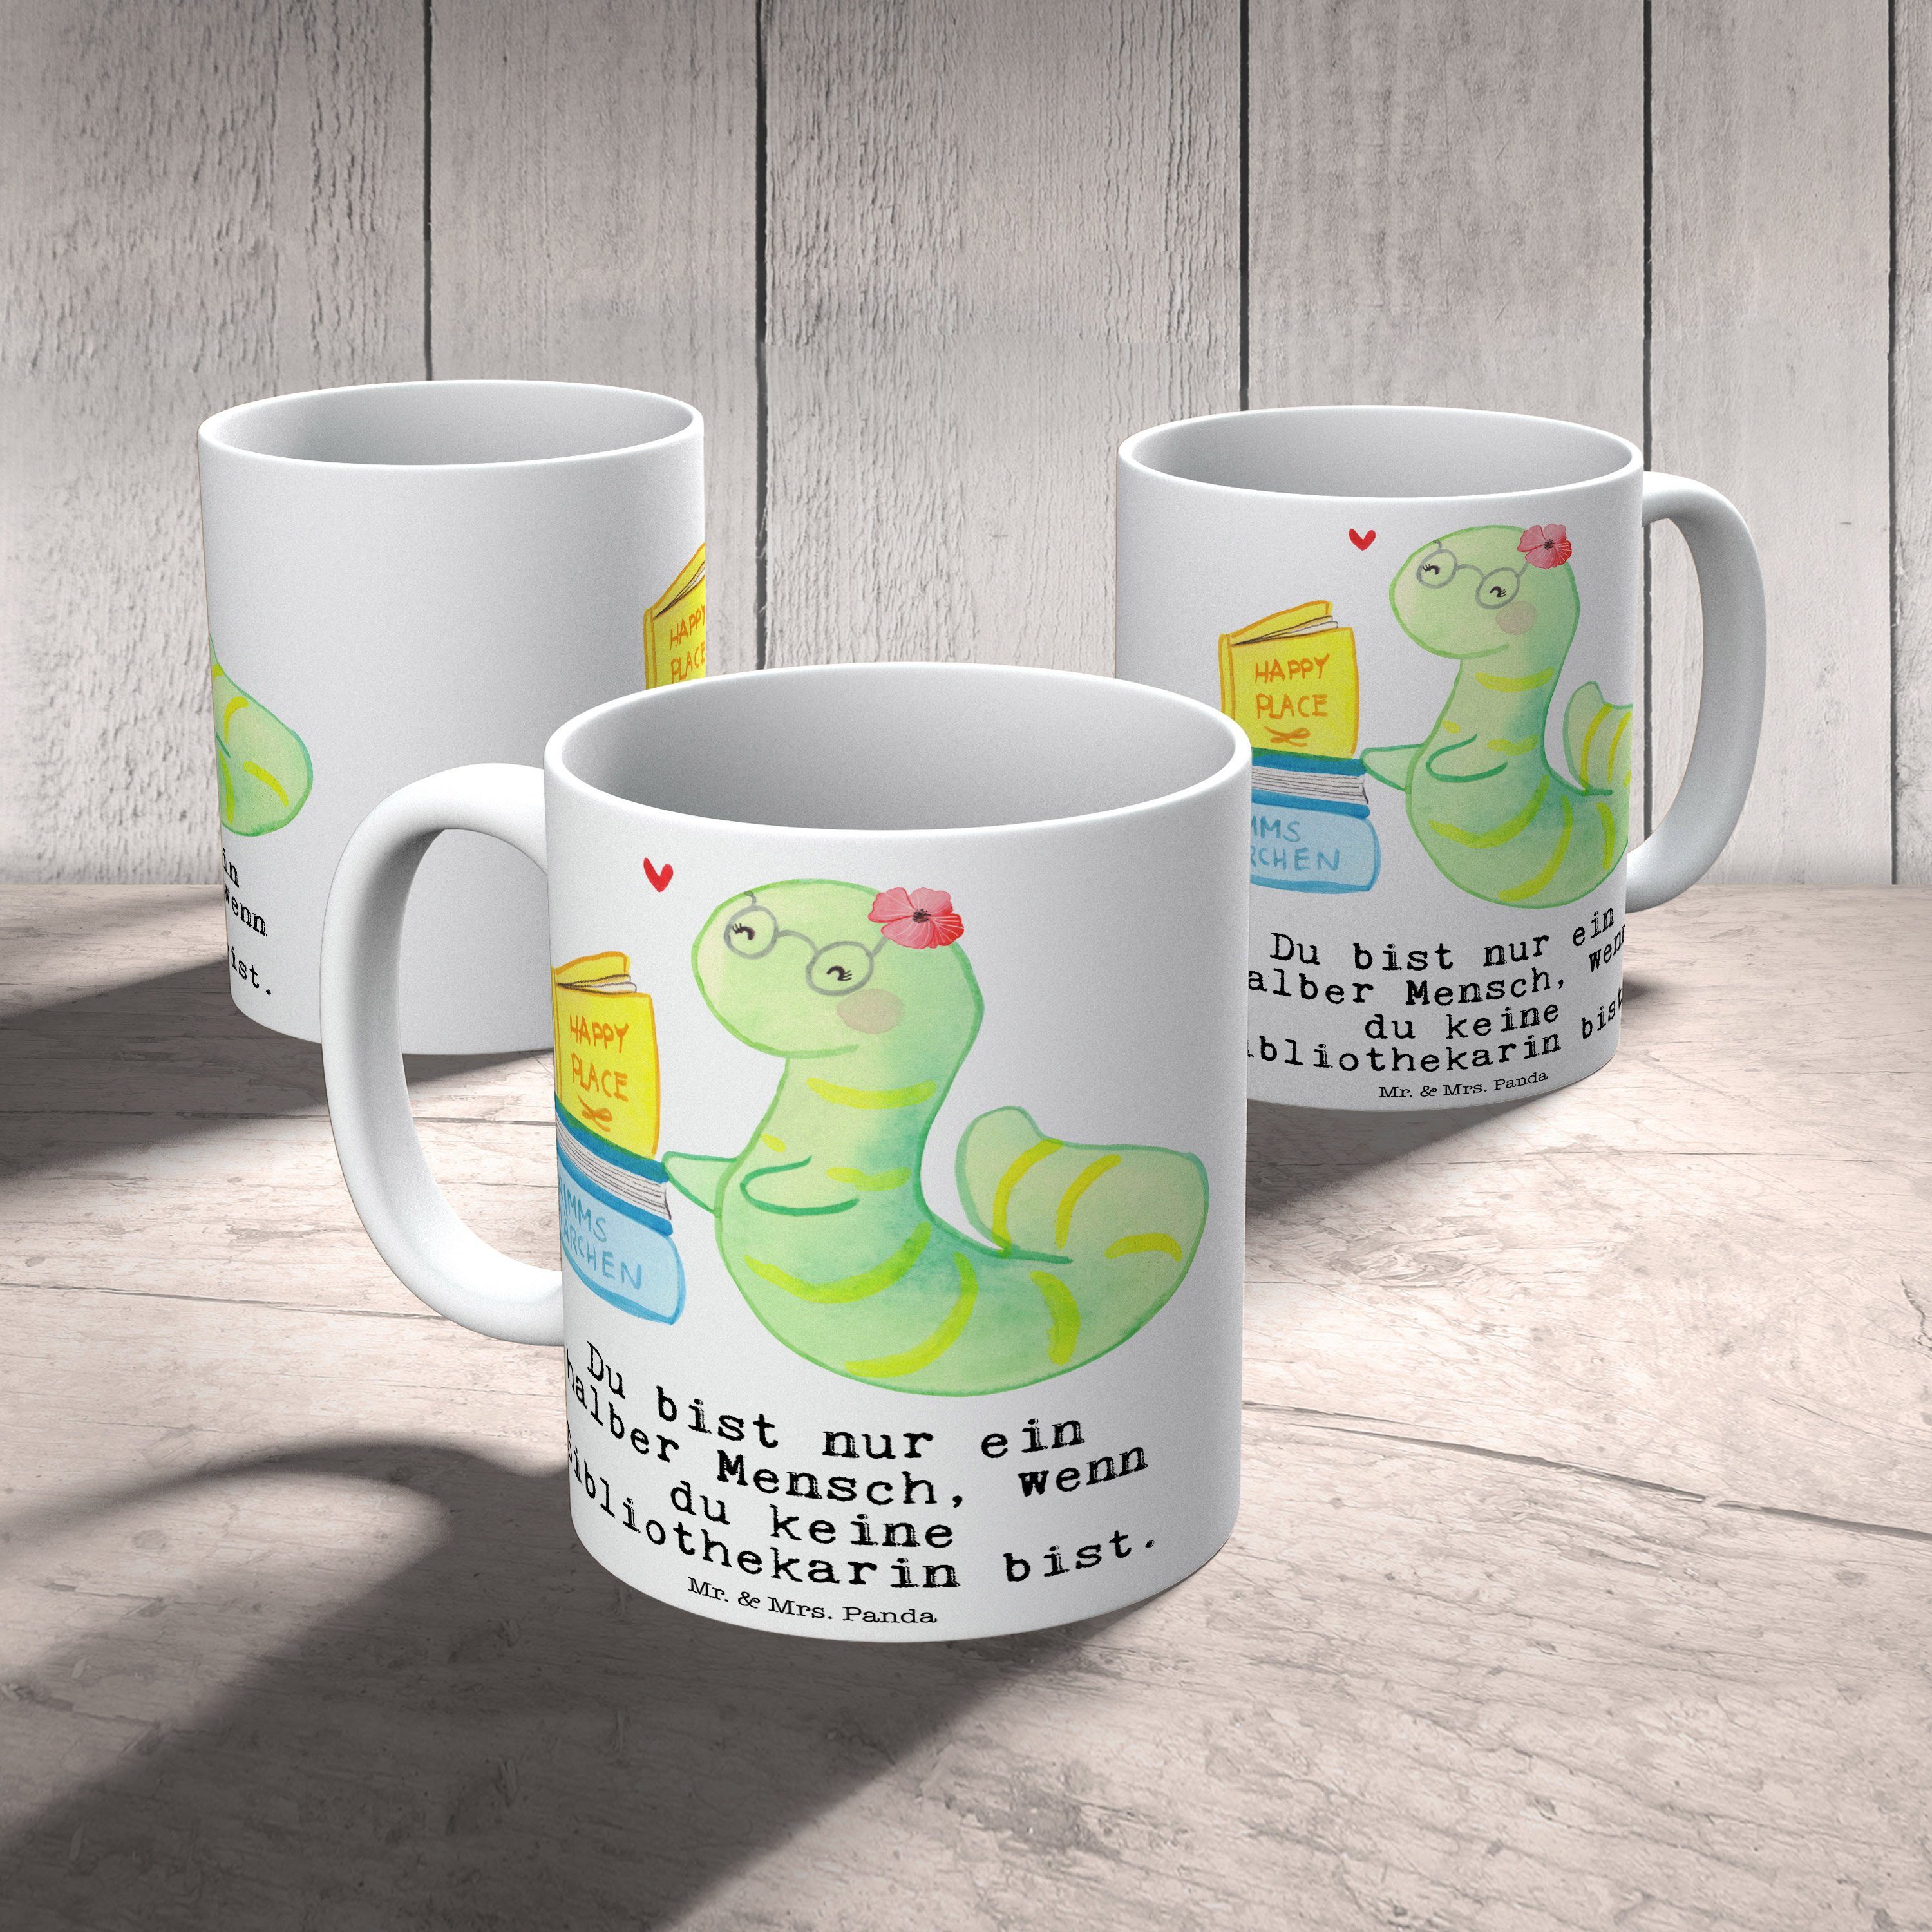 Mr. & Mrs. Kaffeebeche, Keramik Herz Panda Bibliothekarin Geschenk, Sprüche, - Tasse mit Tasse - Weiß